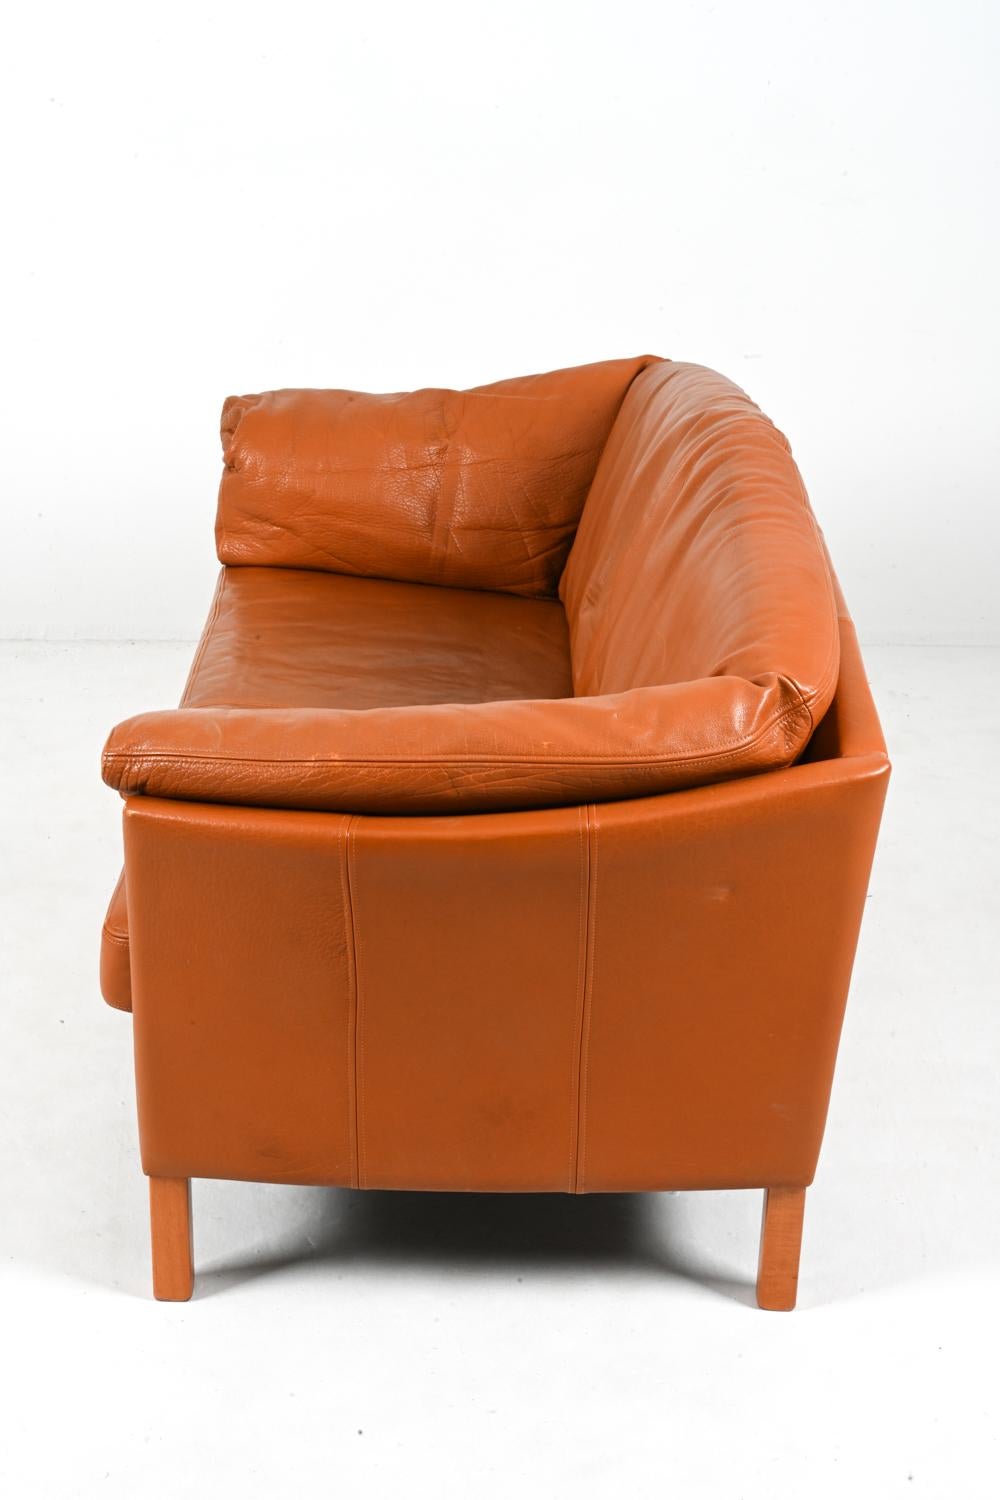 Mogens Hansen Danish Modern Two-Seat Sofa in Leather & Oak For Sale 10